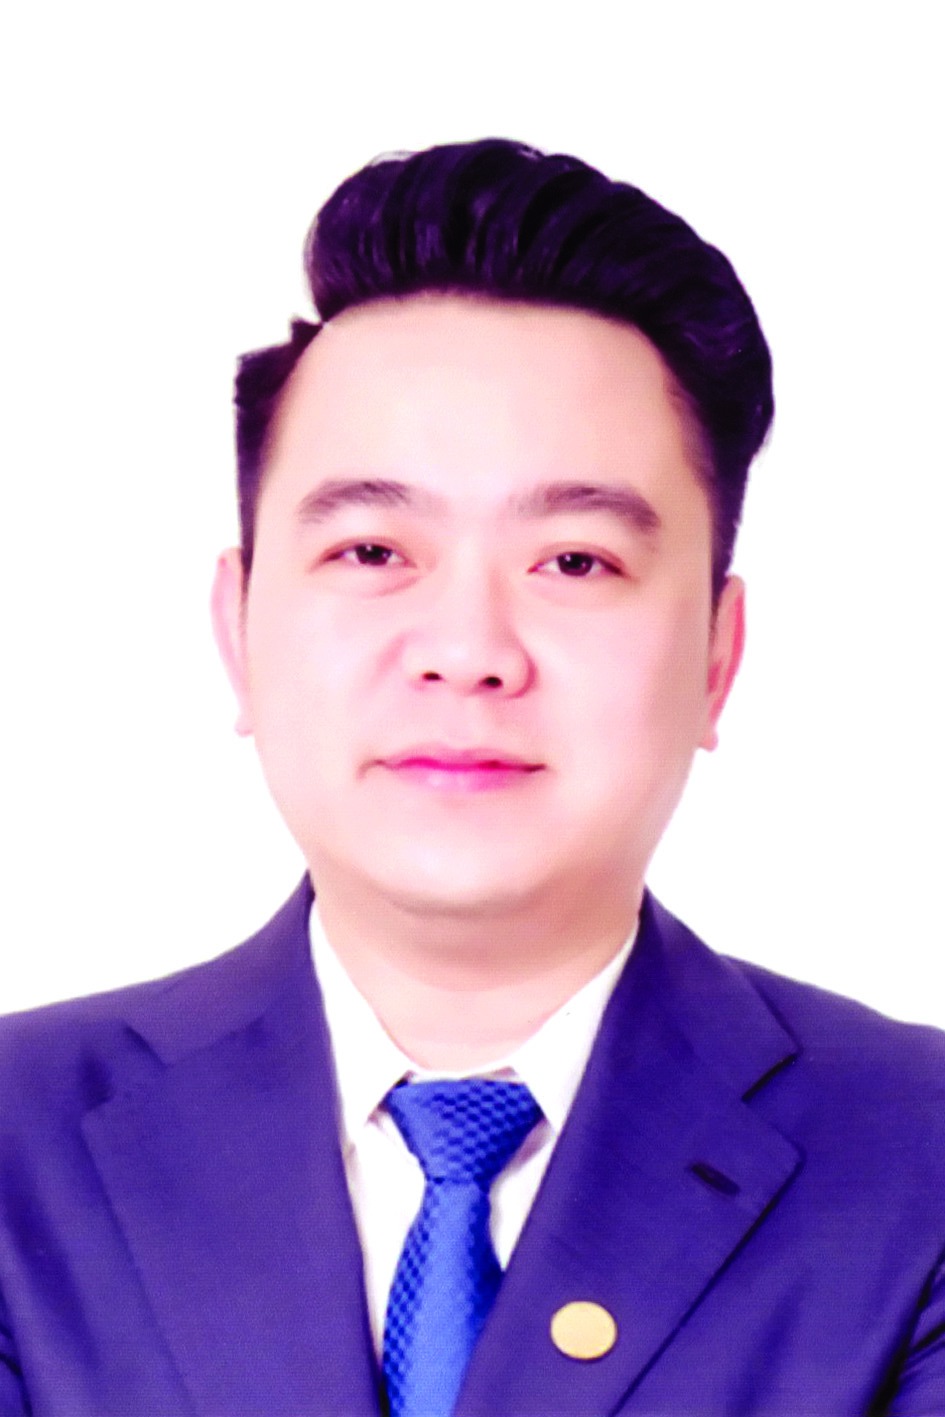 Chương trình hành động của ông Nguyễn Duy Chính, ứng cử viên đại biểu HĐND TP Hà Nội nhiệm kỳ 2021 - 2026 - Ảnh 1